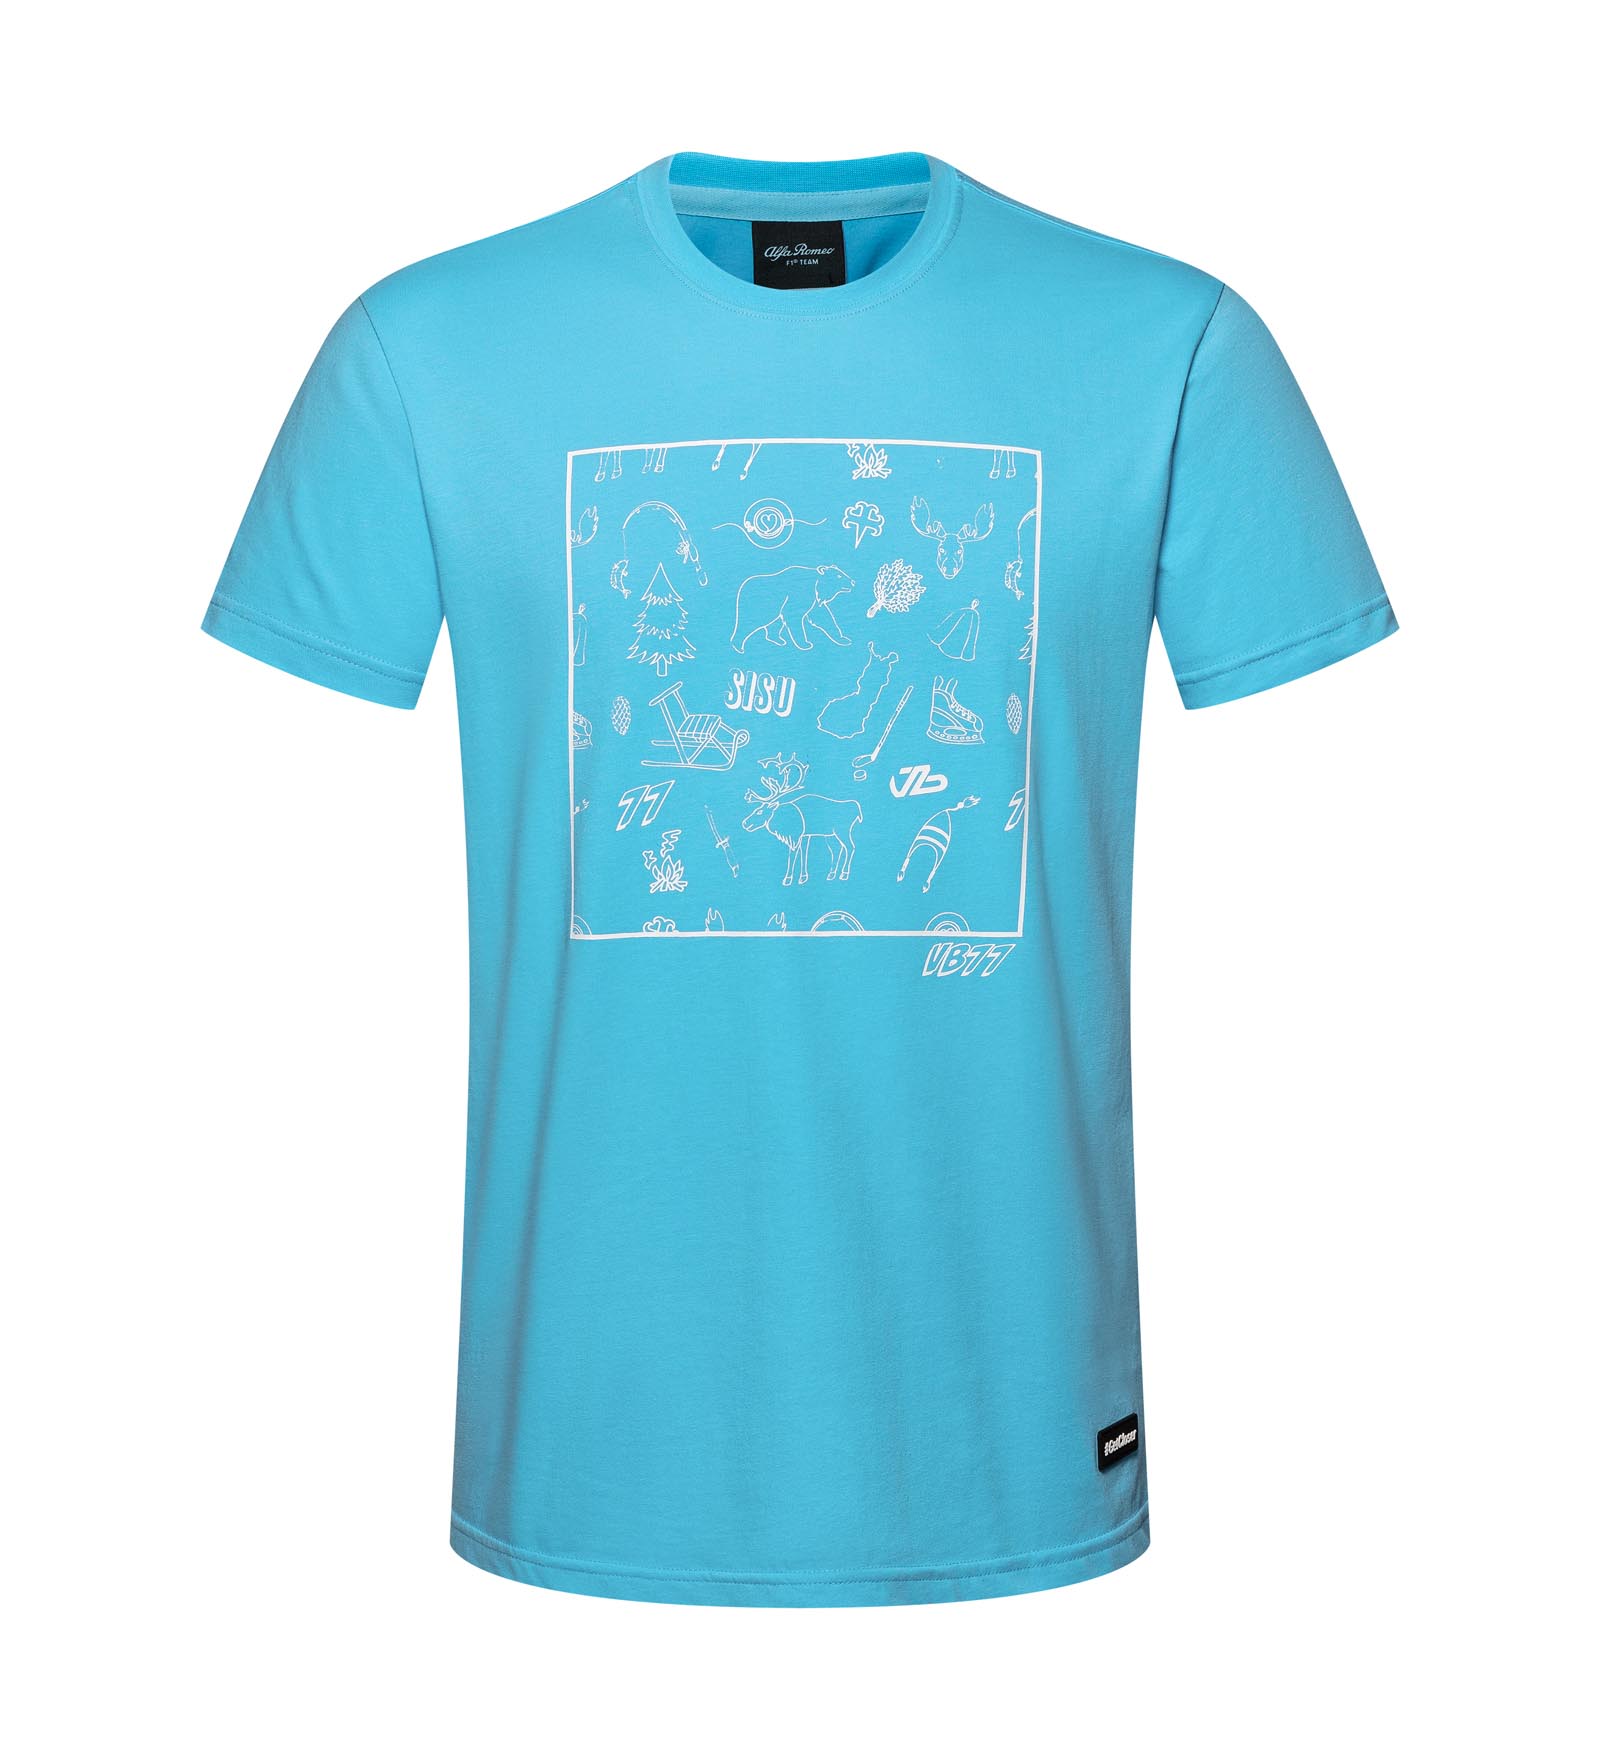 T-Shirt #TeamBottas BlueXXL Valtteri Bottas